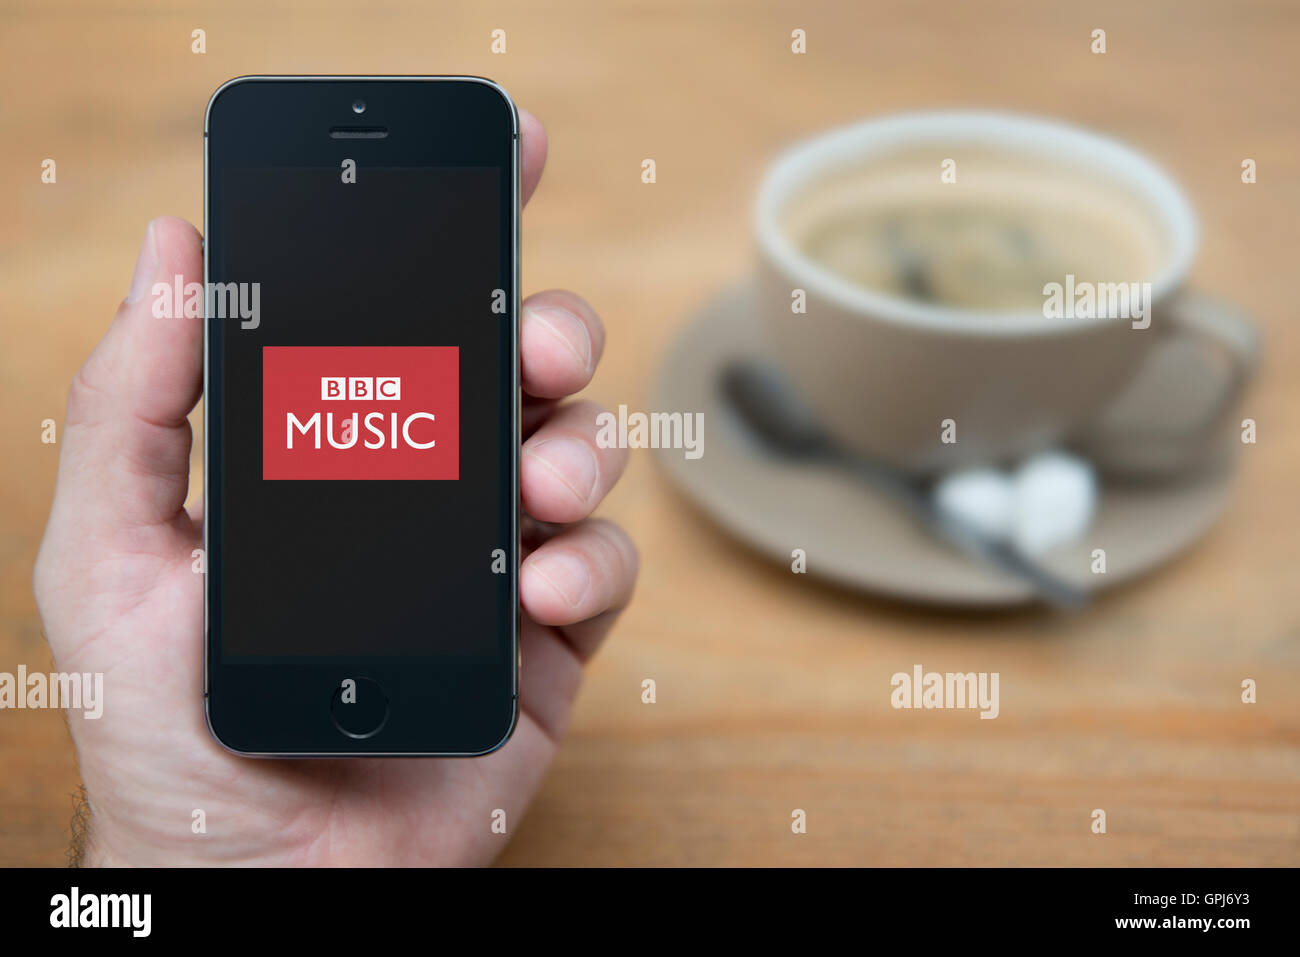 Un homme se penche sur son iPhone qui affiche le logo de BBC Music, tandis qu'assis avec une tasse de café (usage éditorial uniquement). Banque D'Images